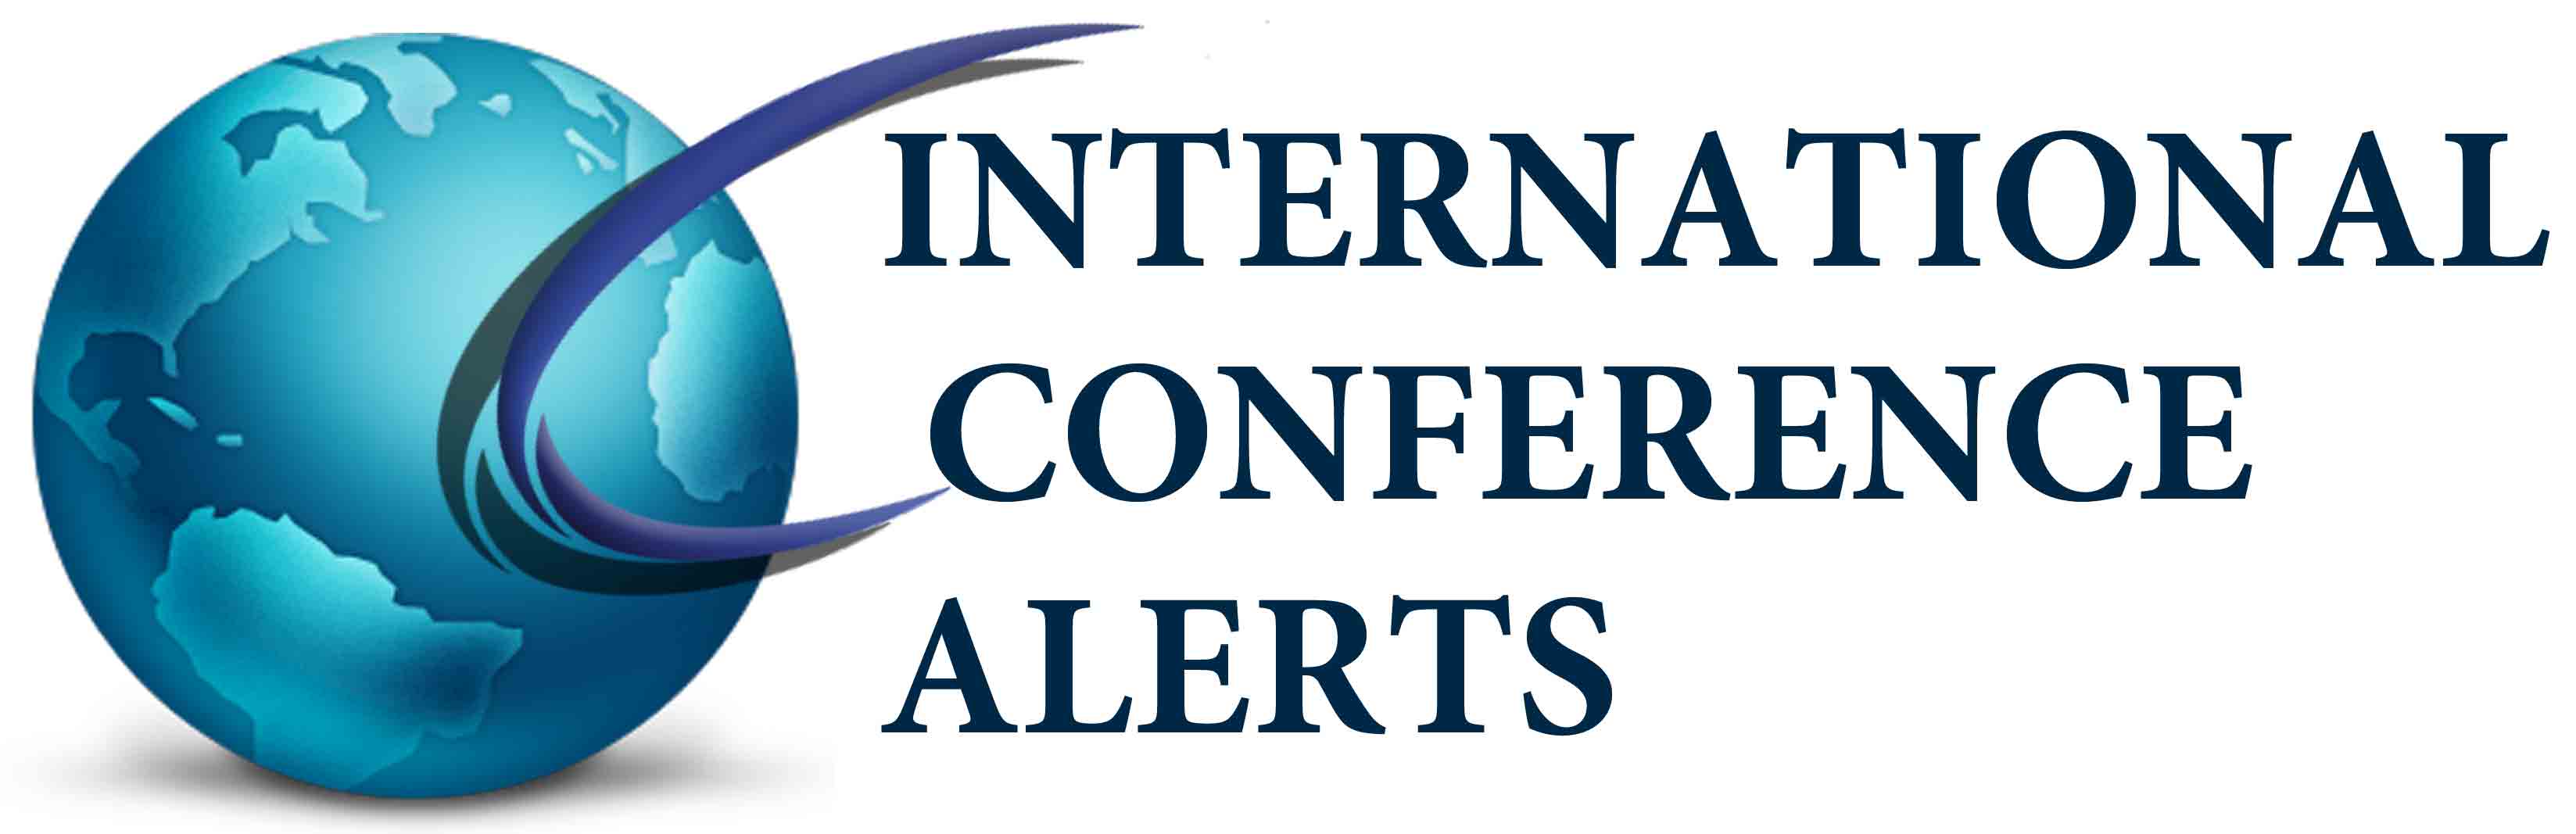 international conference alerts logo